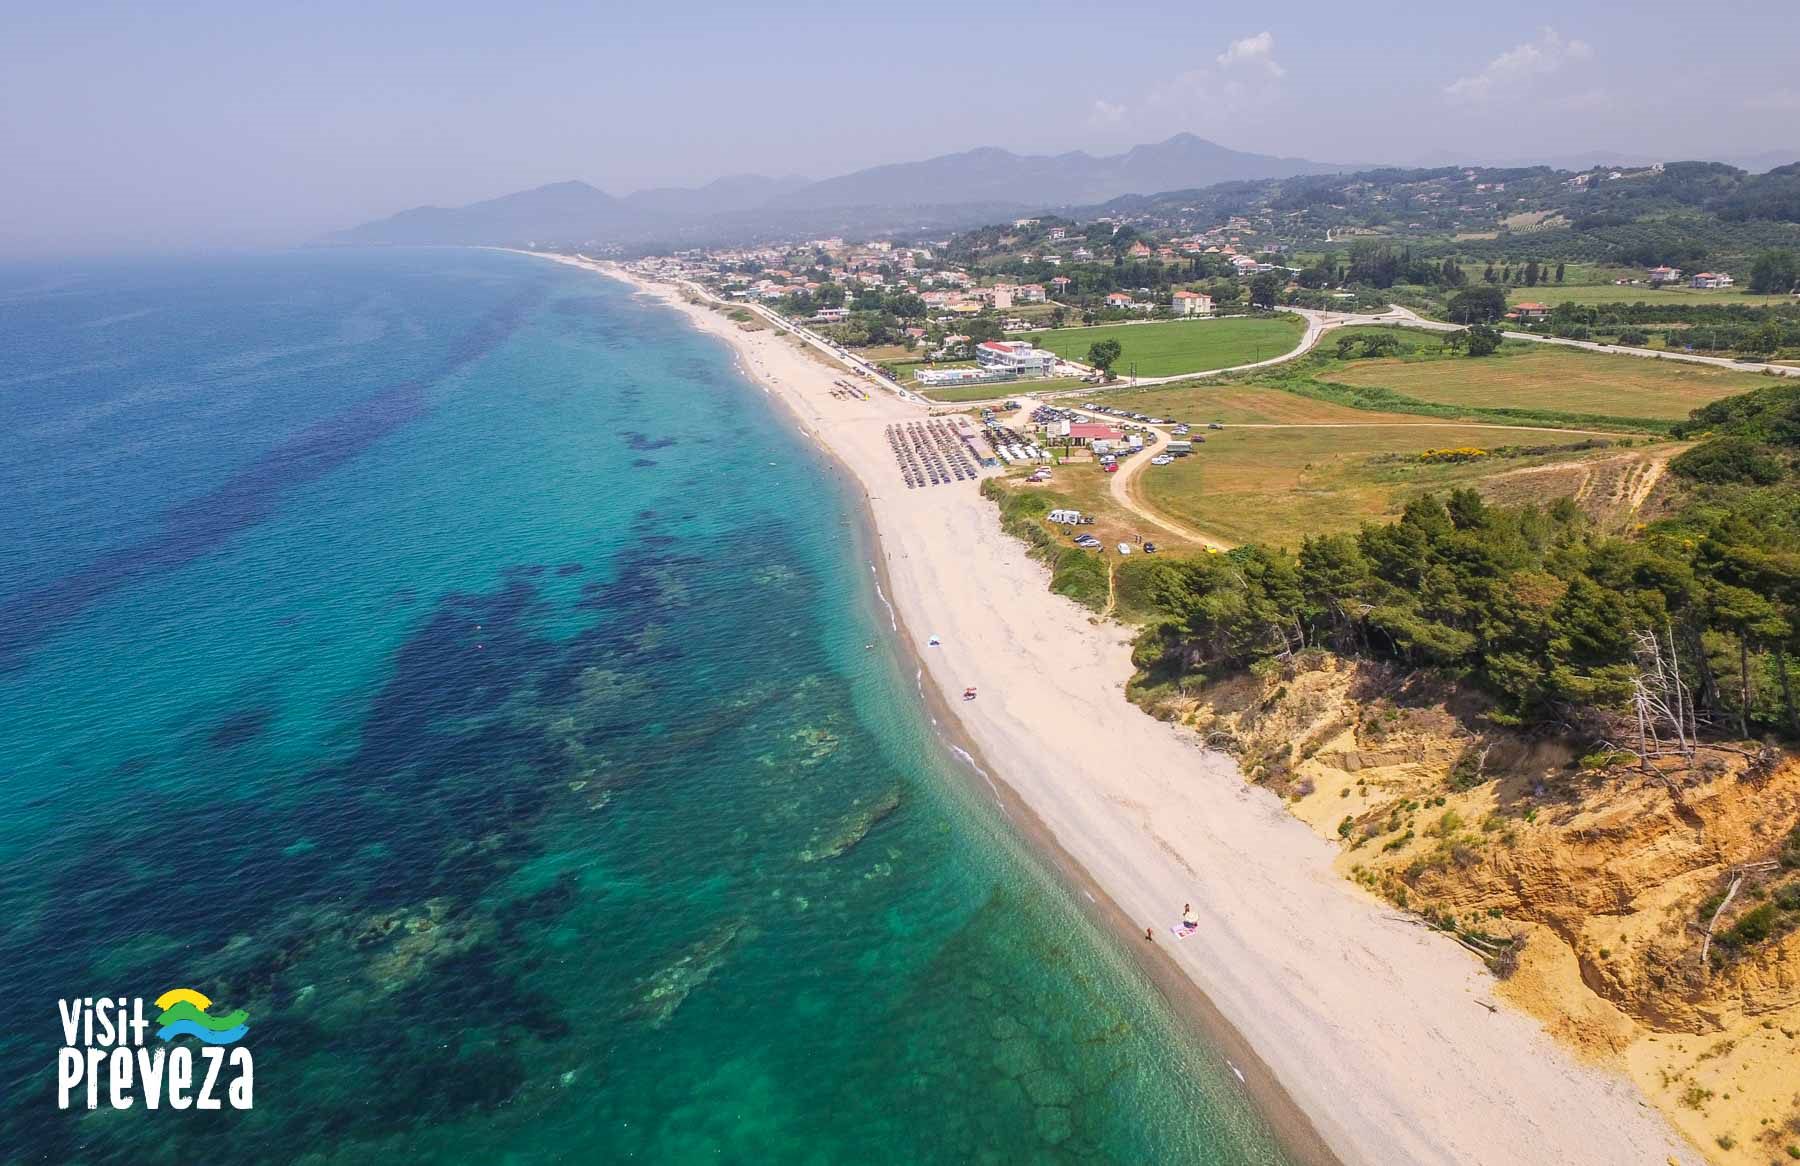 Itinerario tematico della costa dell’Epiro